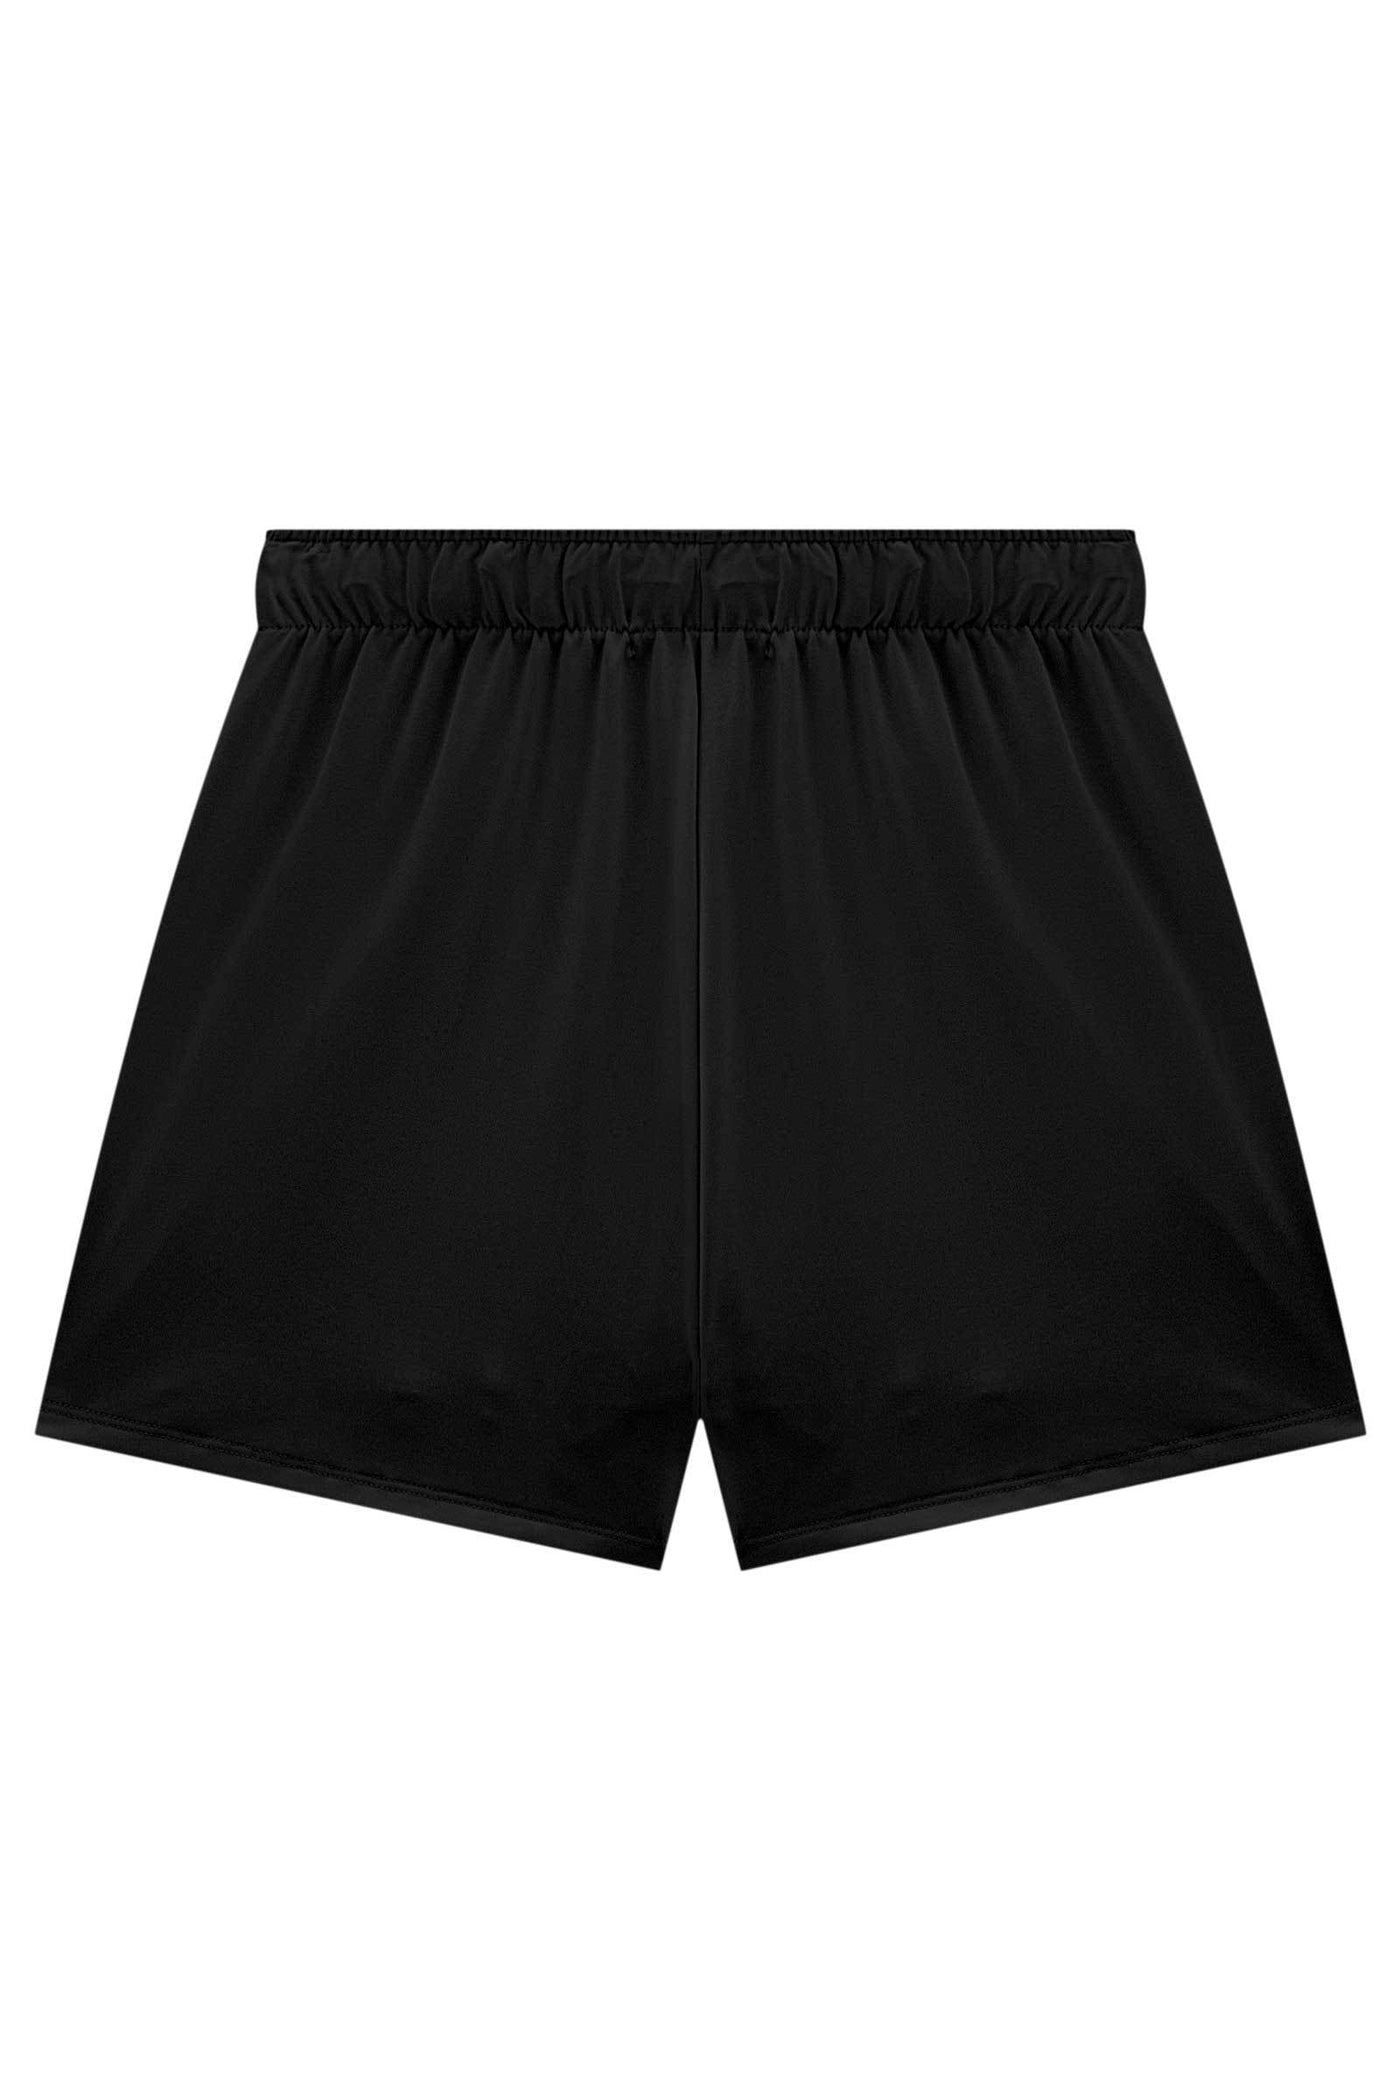 Shorts em Malha Uv Dry 50+ 66205 Vic&Vicky